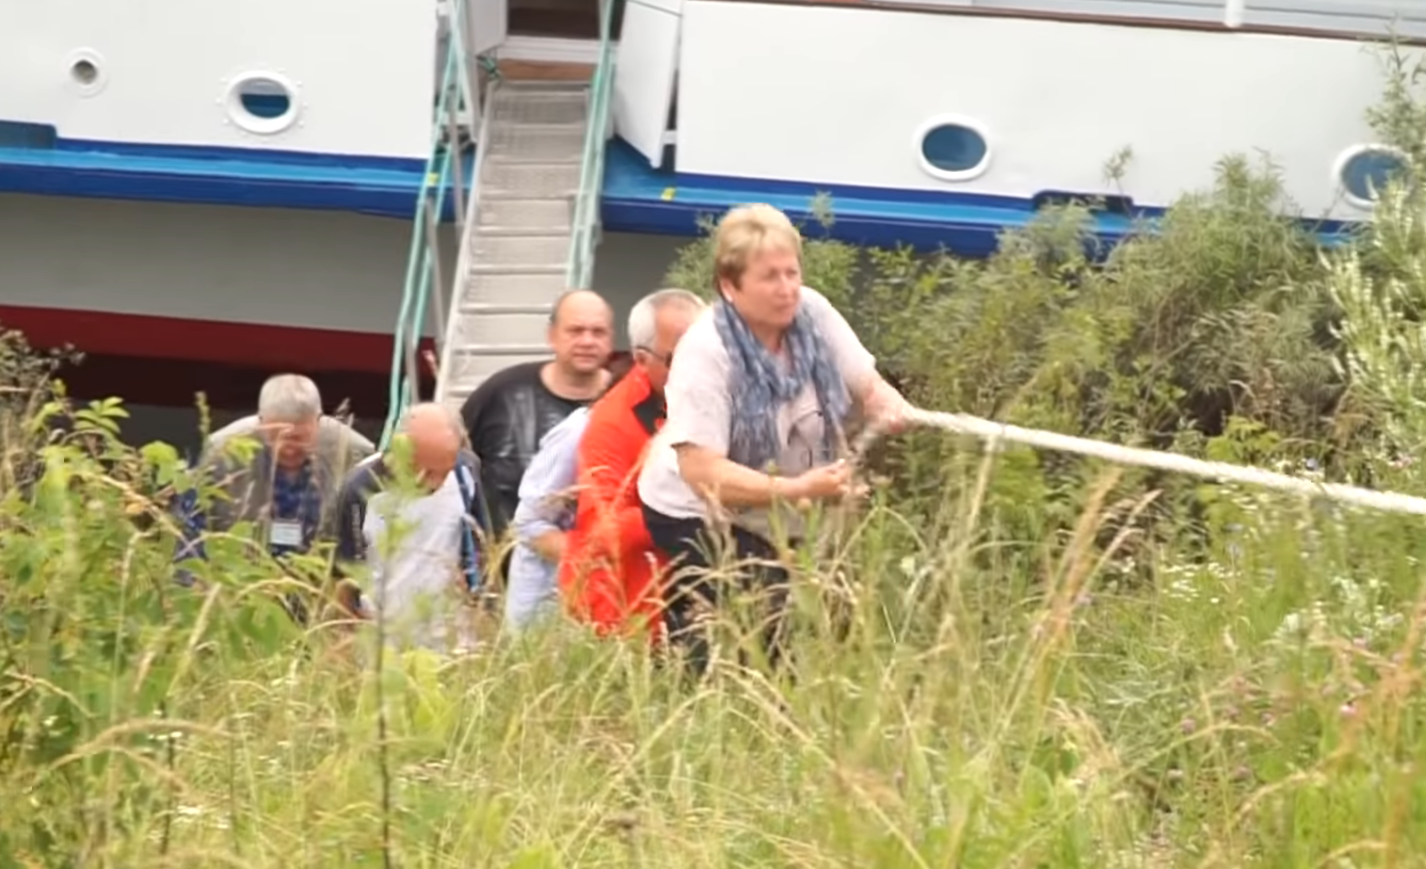 Хлебосольная встреча: туристам, приплывшим в Касимов на теплоходе, пришлось подниматься в город по канату